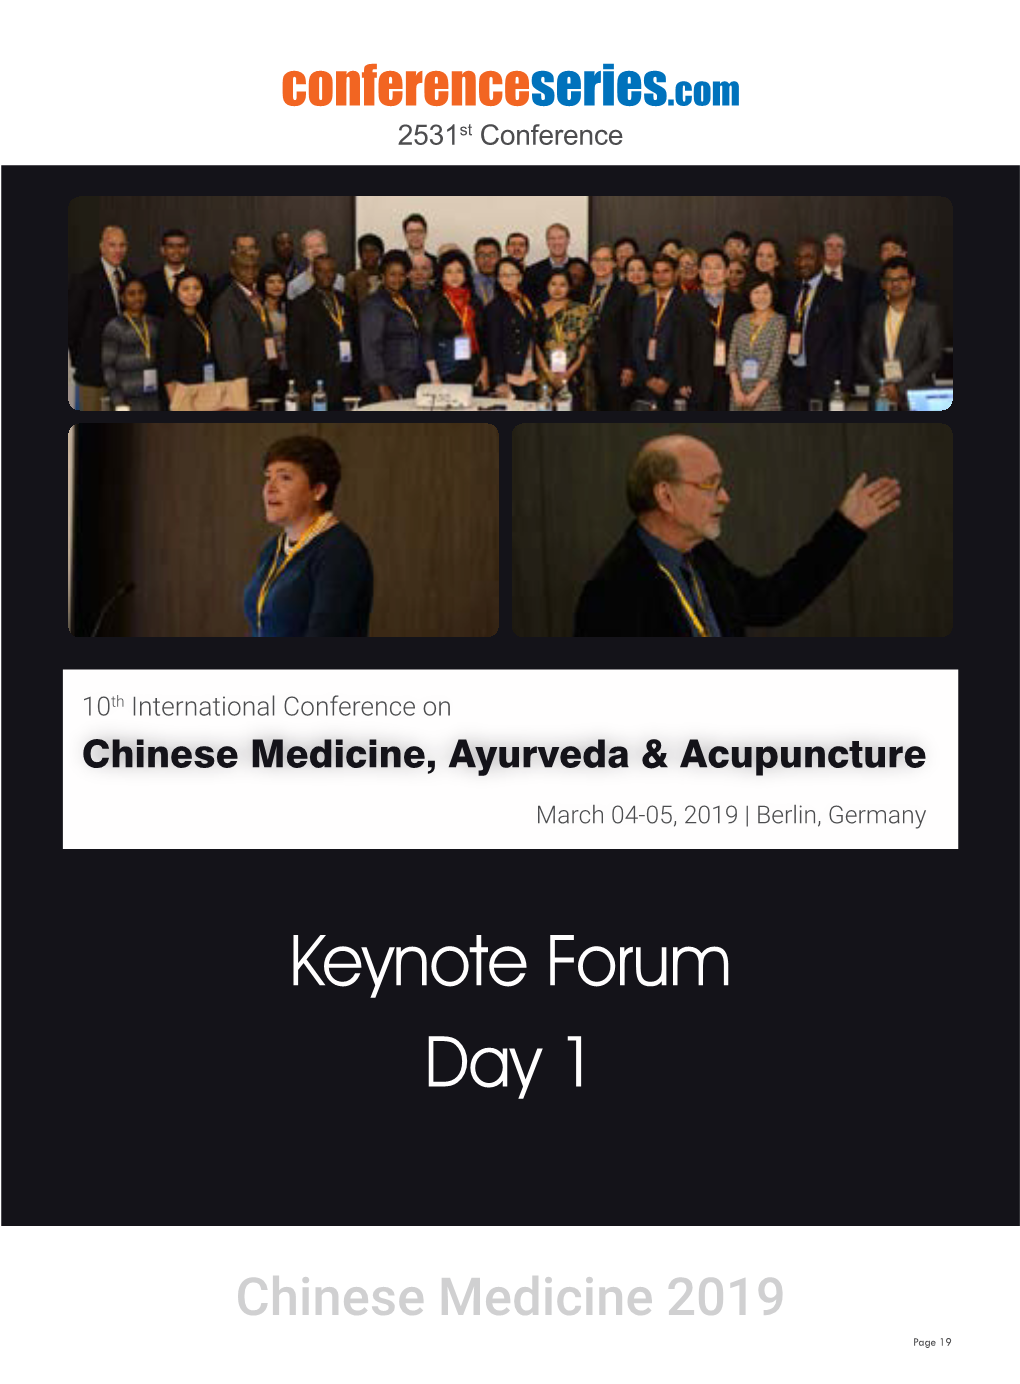 Keynote Forum Day 1